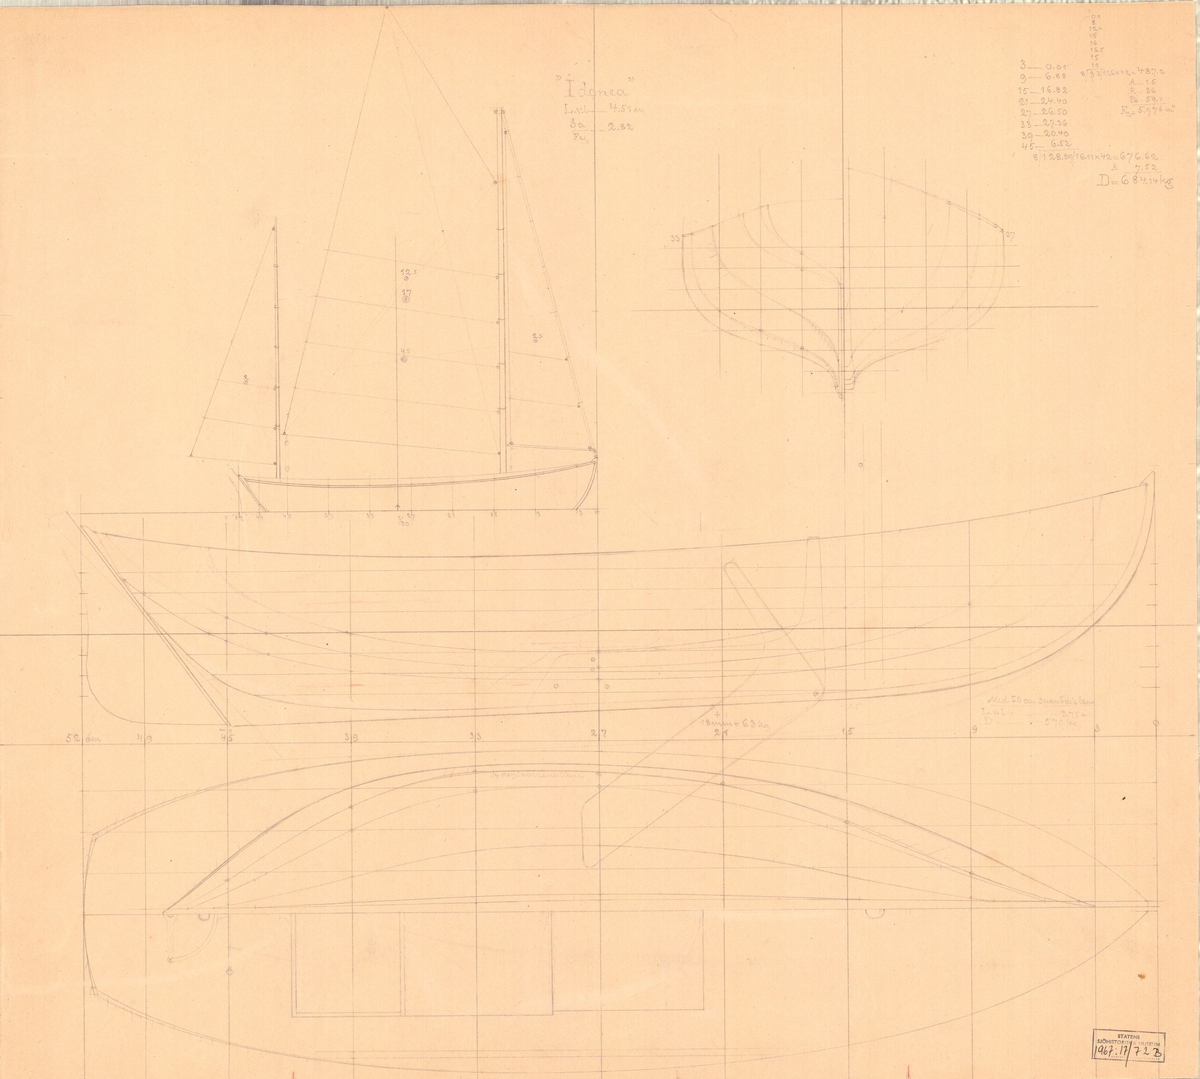 Tvåmastad segelkanot med gaffelrigg och centerbord.
Spantruta, segel-, profil- och linjeritning